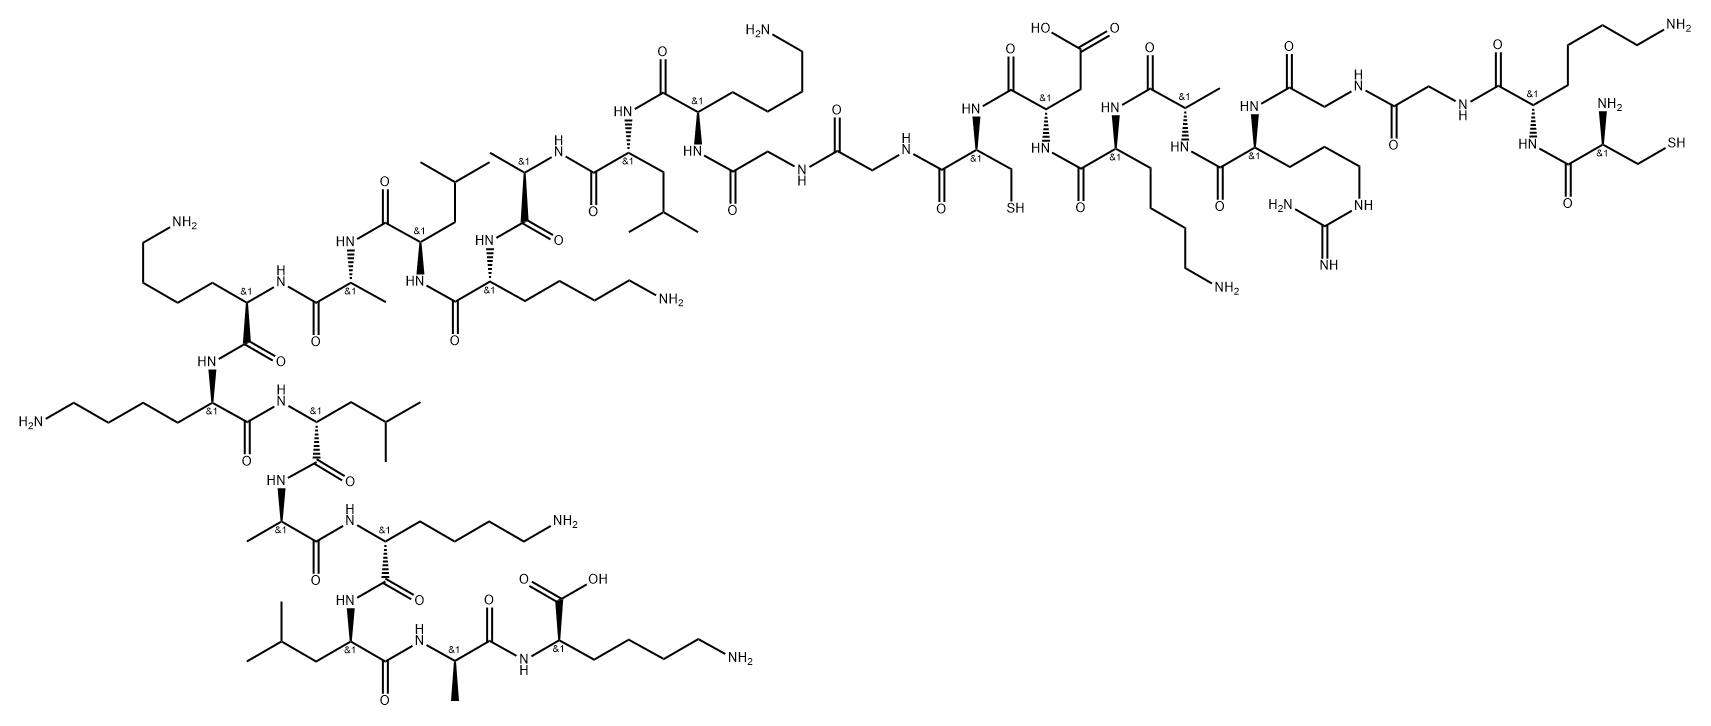 D-Lysine, L-cysteinyl-L-lysylglycylglycyl-L-arginyl-L-alanyl-L-lysyl-L-α-aspartyl-L-cysteinylglycylglycyl-D-lysyl-D-leucyl-D-alanyl-D-lysyl-D-leucyl-D-alanyl-D-lysyl-D-lysyl-D-leucyl-D-alanyl-D-lysyl-D-leucyl-D-alanyl-